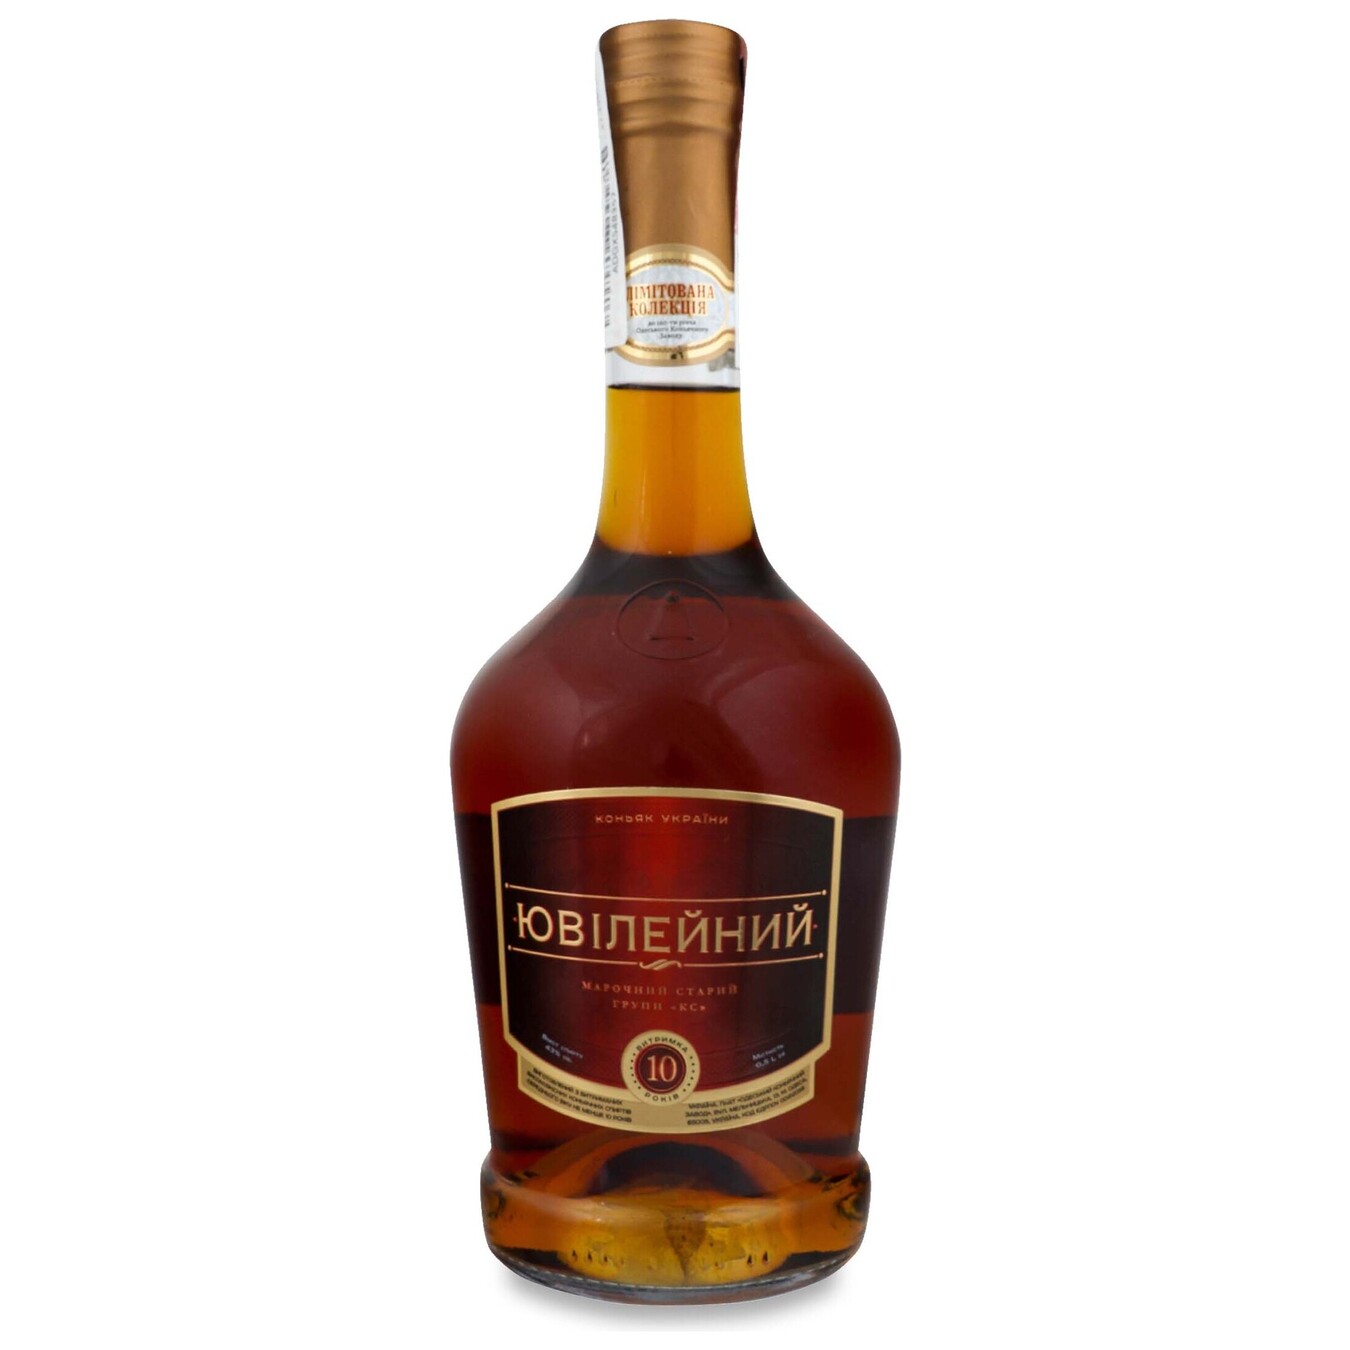 Odessa Jubilee cognac 43% shaped bottle 0.5 l